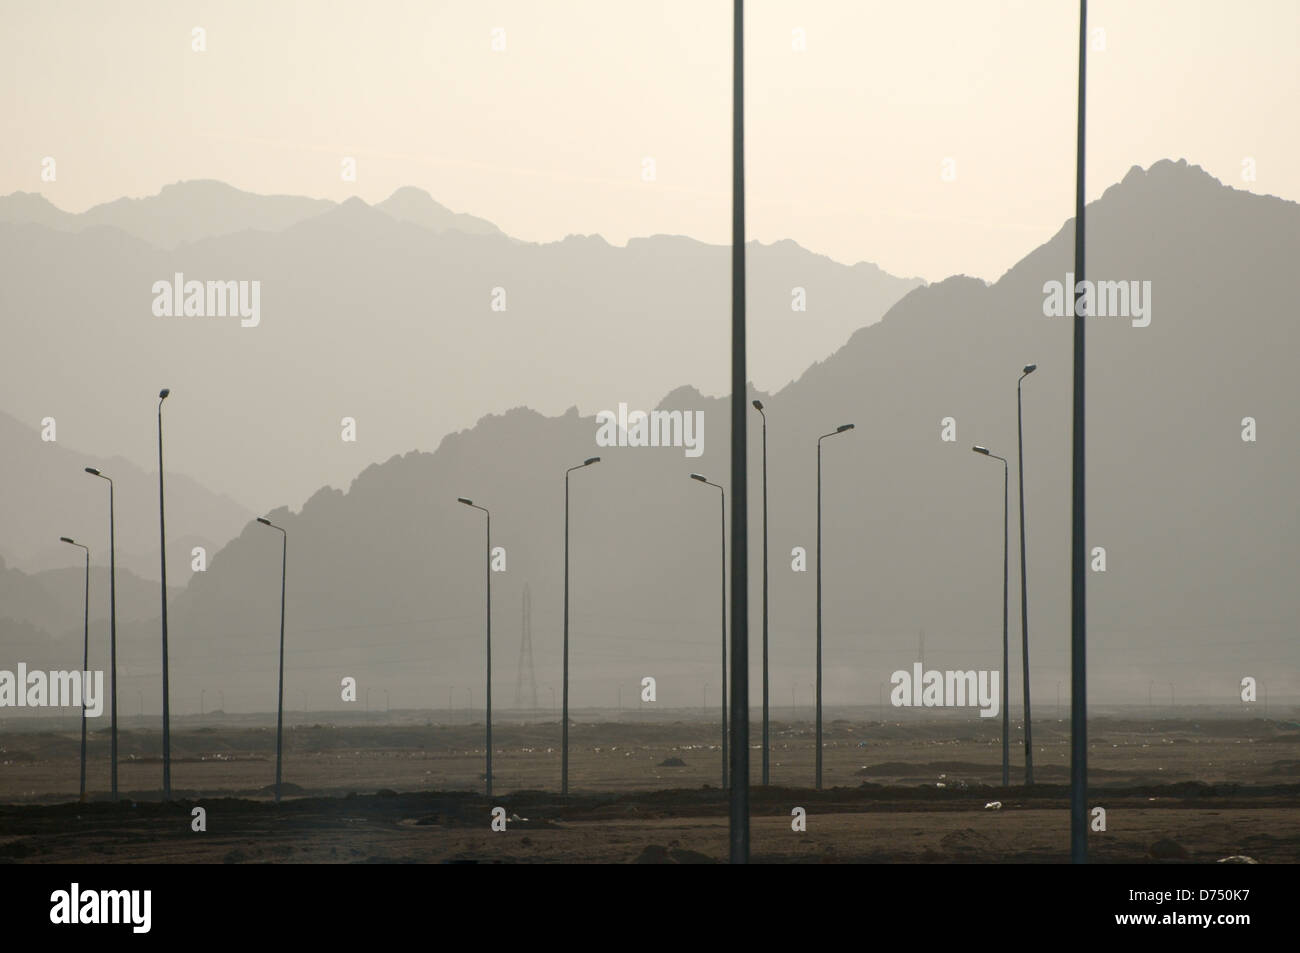 lampposts on a background of Sinai mountains, Sinai Peninsula, Egypt  Stock Photo